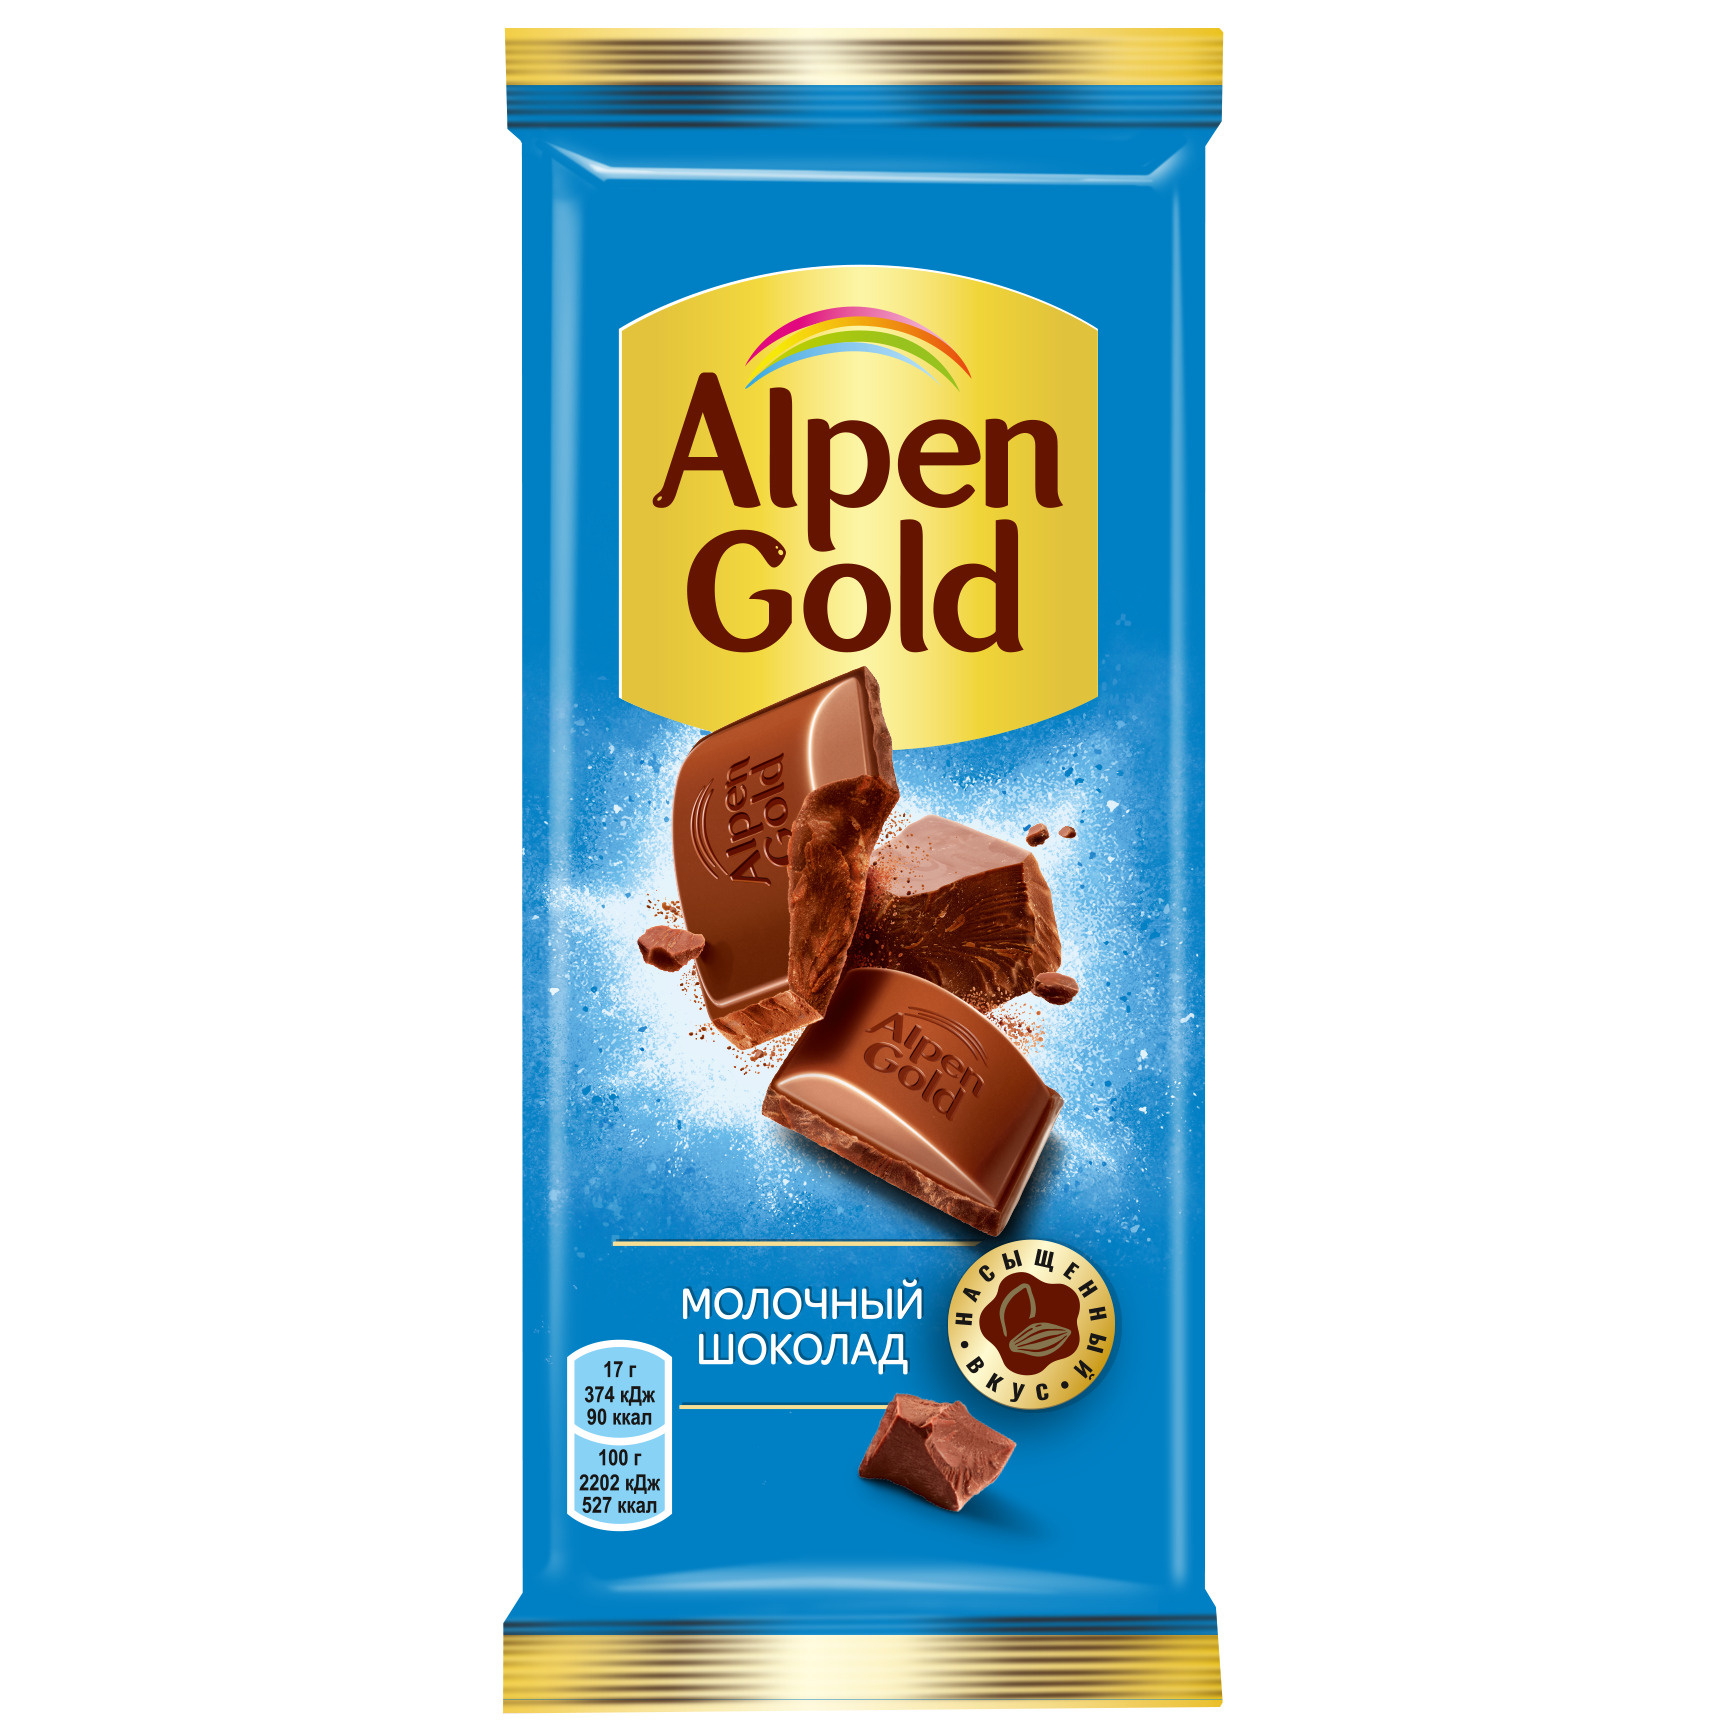 Шоколад Alpen Gold Молочный, 150 г шоколад alpen gold молочный c инжиром кокосовой стружкой и соленым крекером 90 г